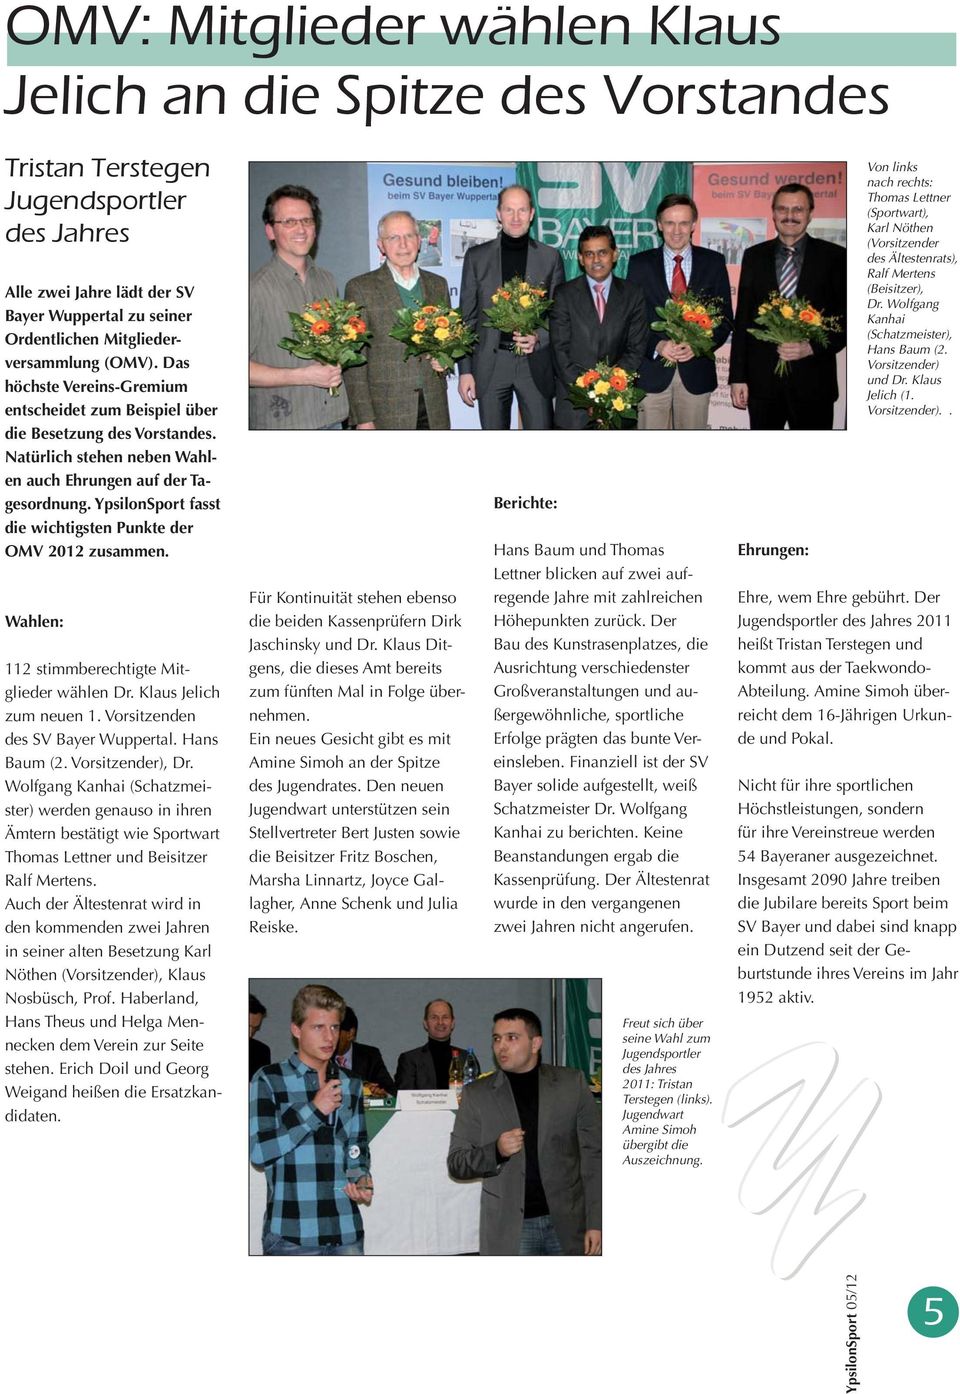 YpsilonSport fasst die wichtigsten Punkte der OMV 2012 zusammen. Wahlen: 112 stimmberechtigte Mitglieder wählen Dr. Klaus Jelich zum neuen 1. Vorsitzenden des SV Bayer Wuppertal. Hans Baum (2.